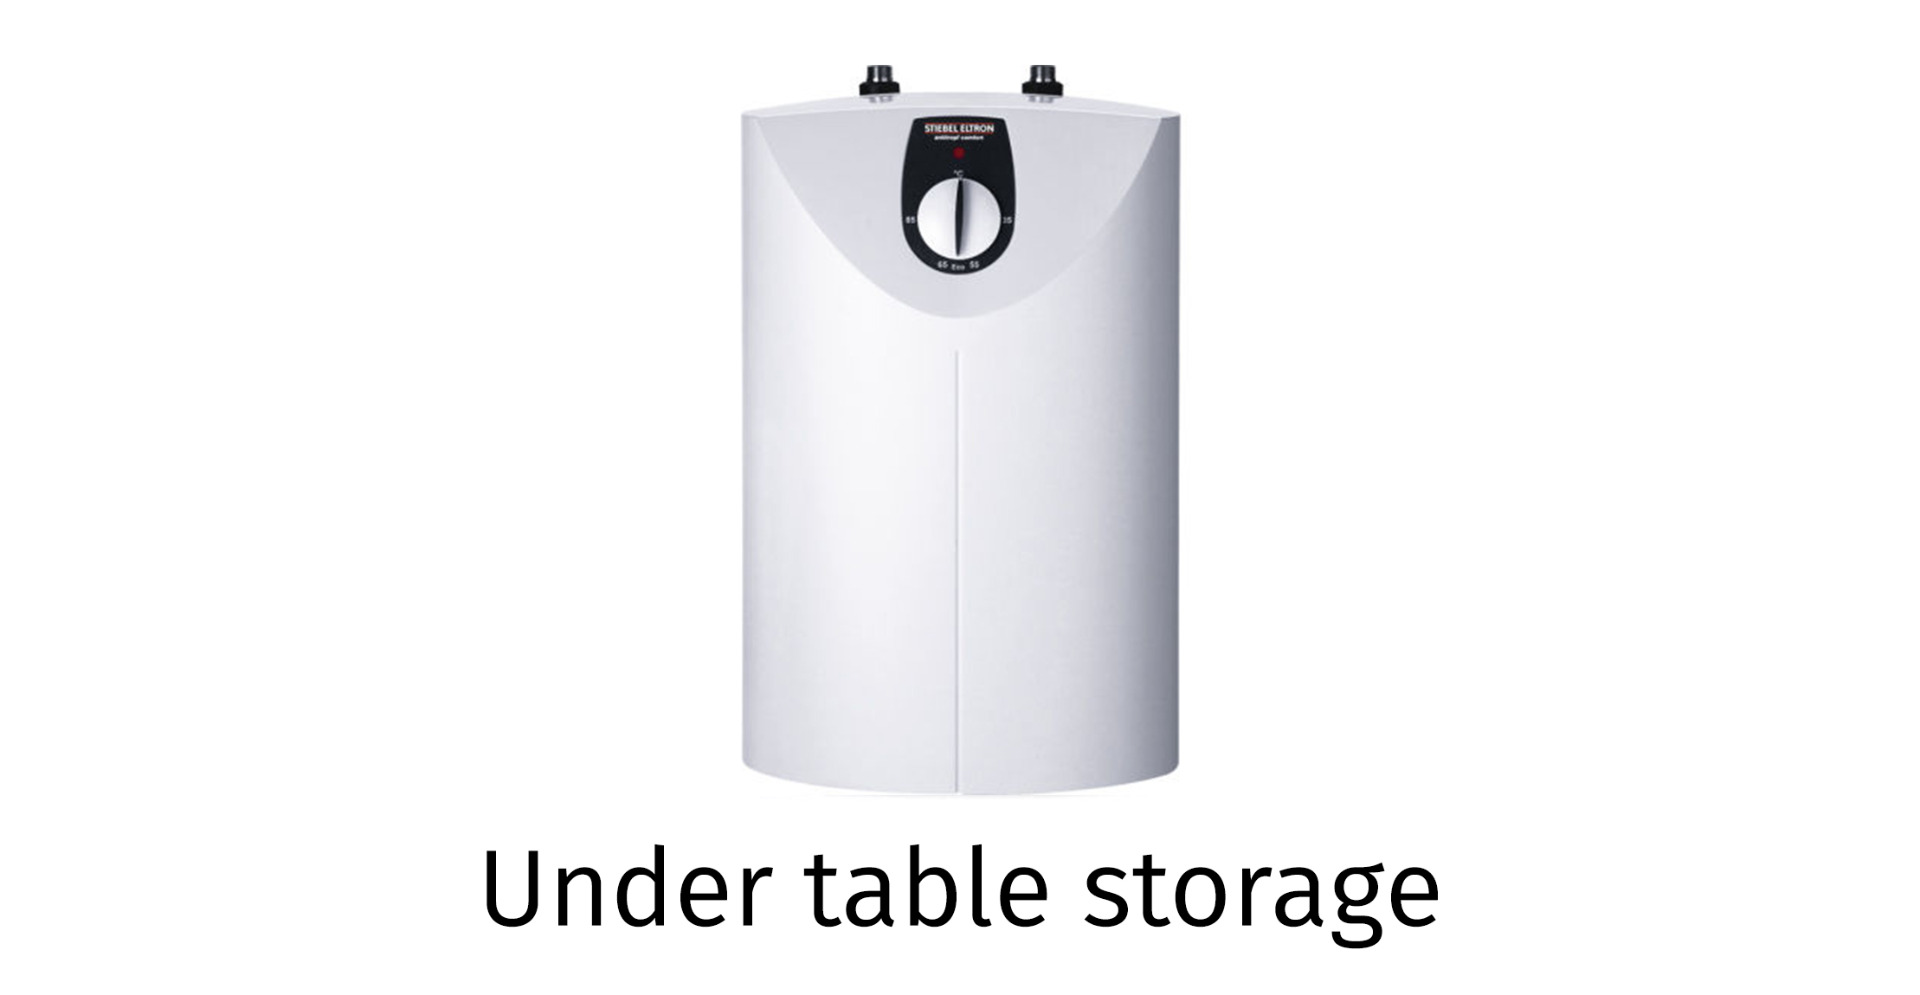 Under table storage